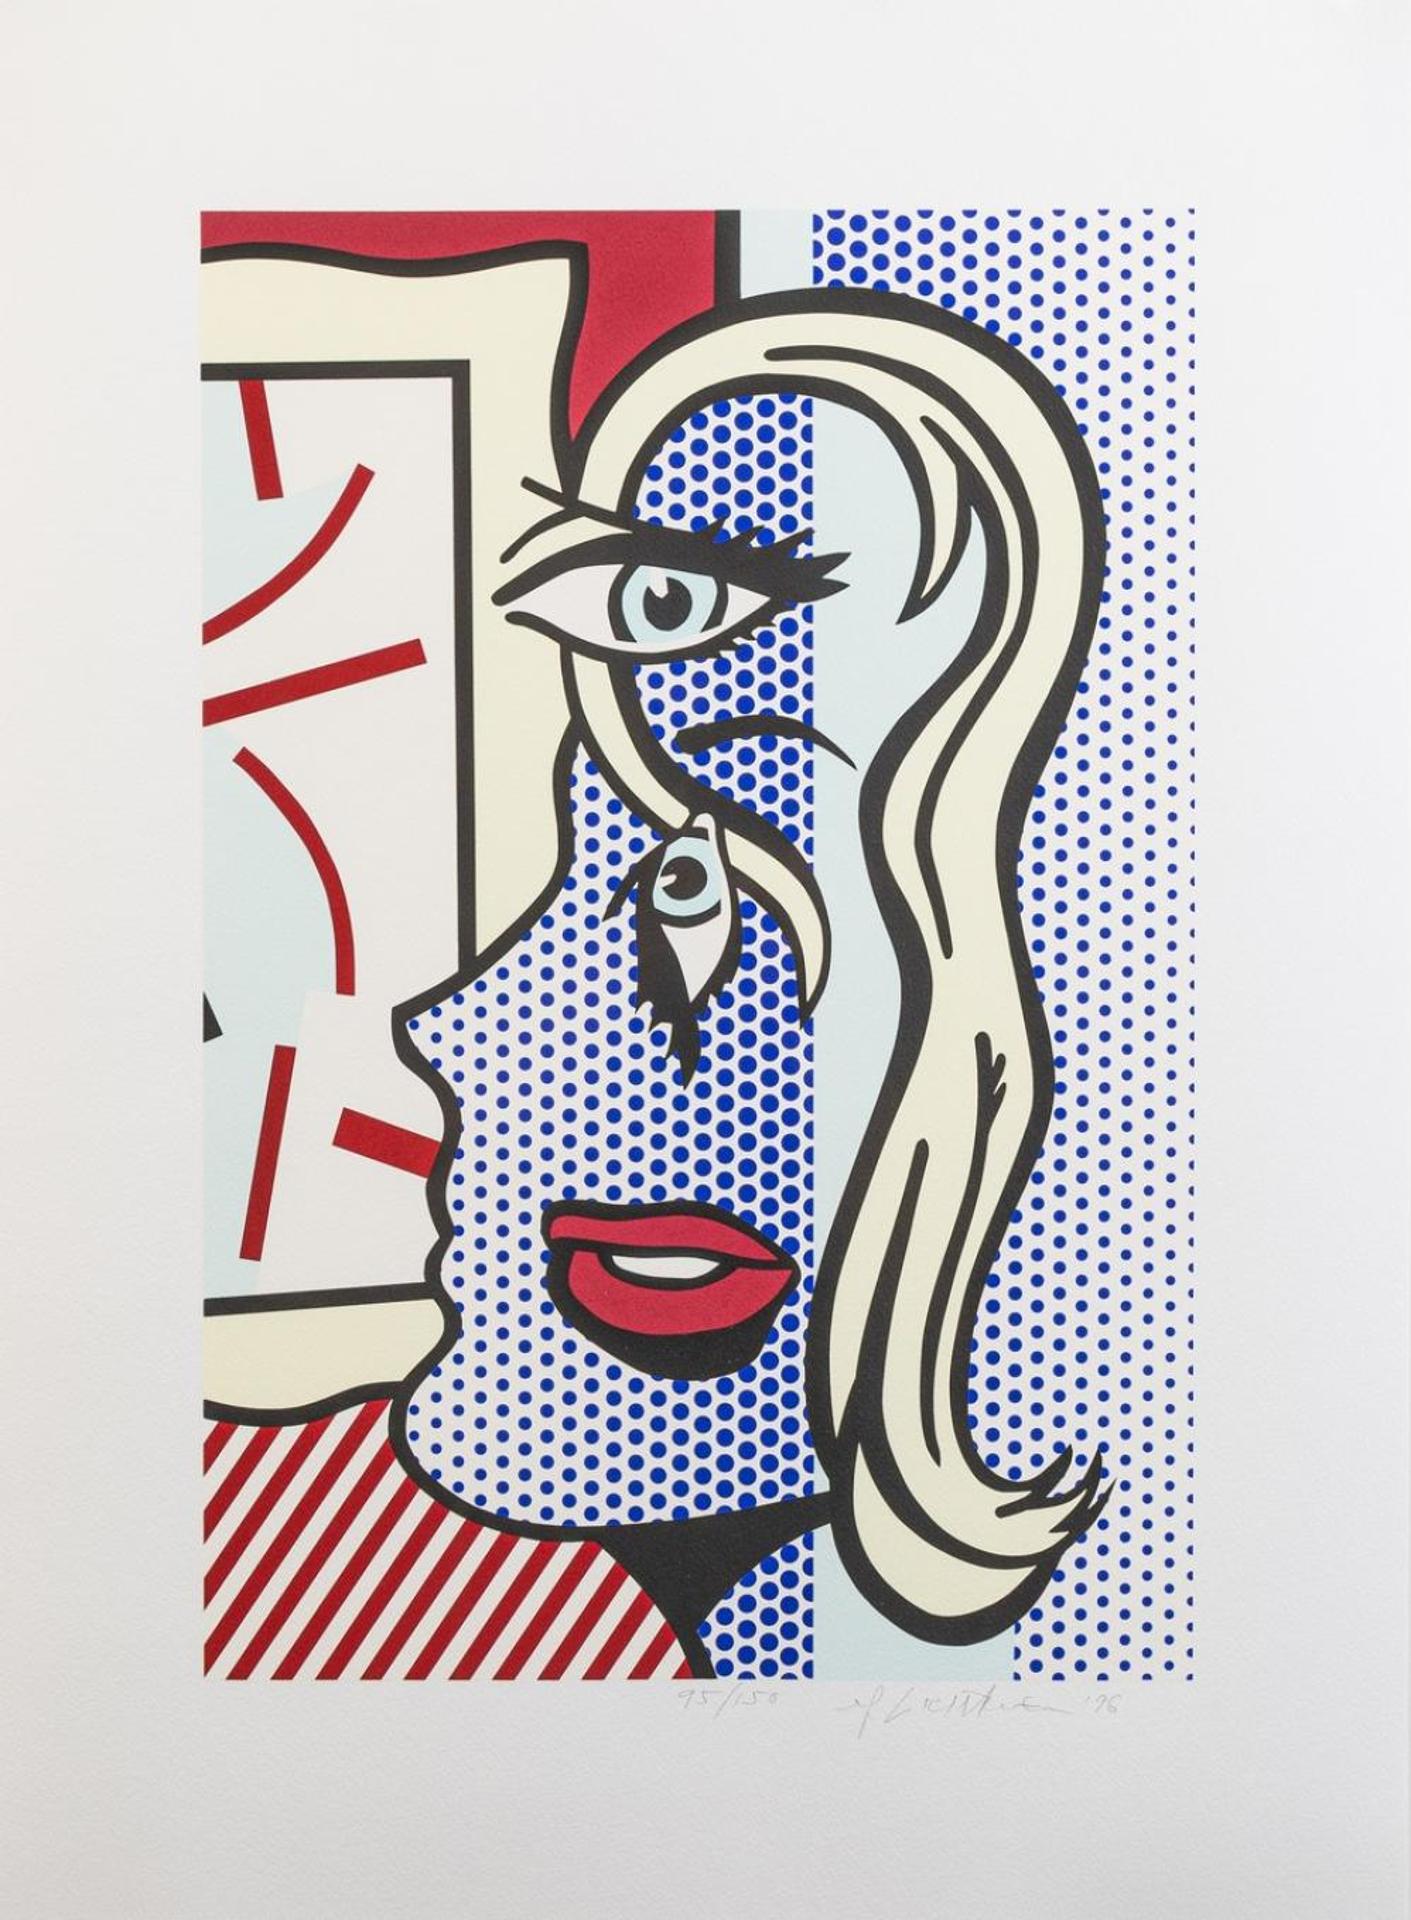 Roy Lichtenstein (1923-1997) - Art Critic